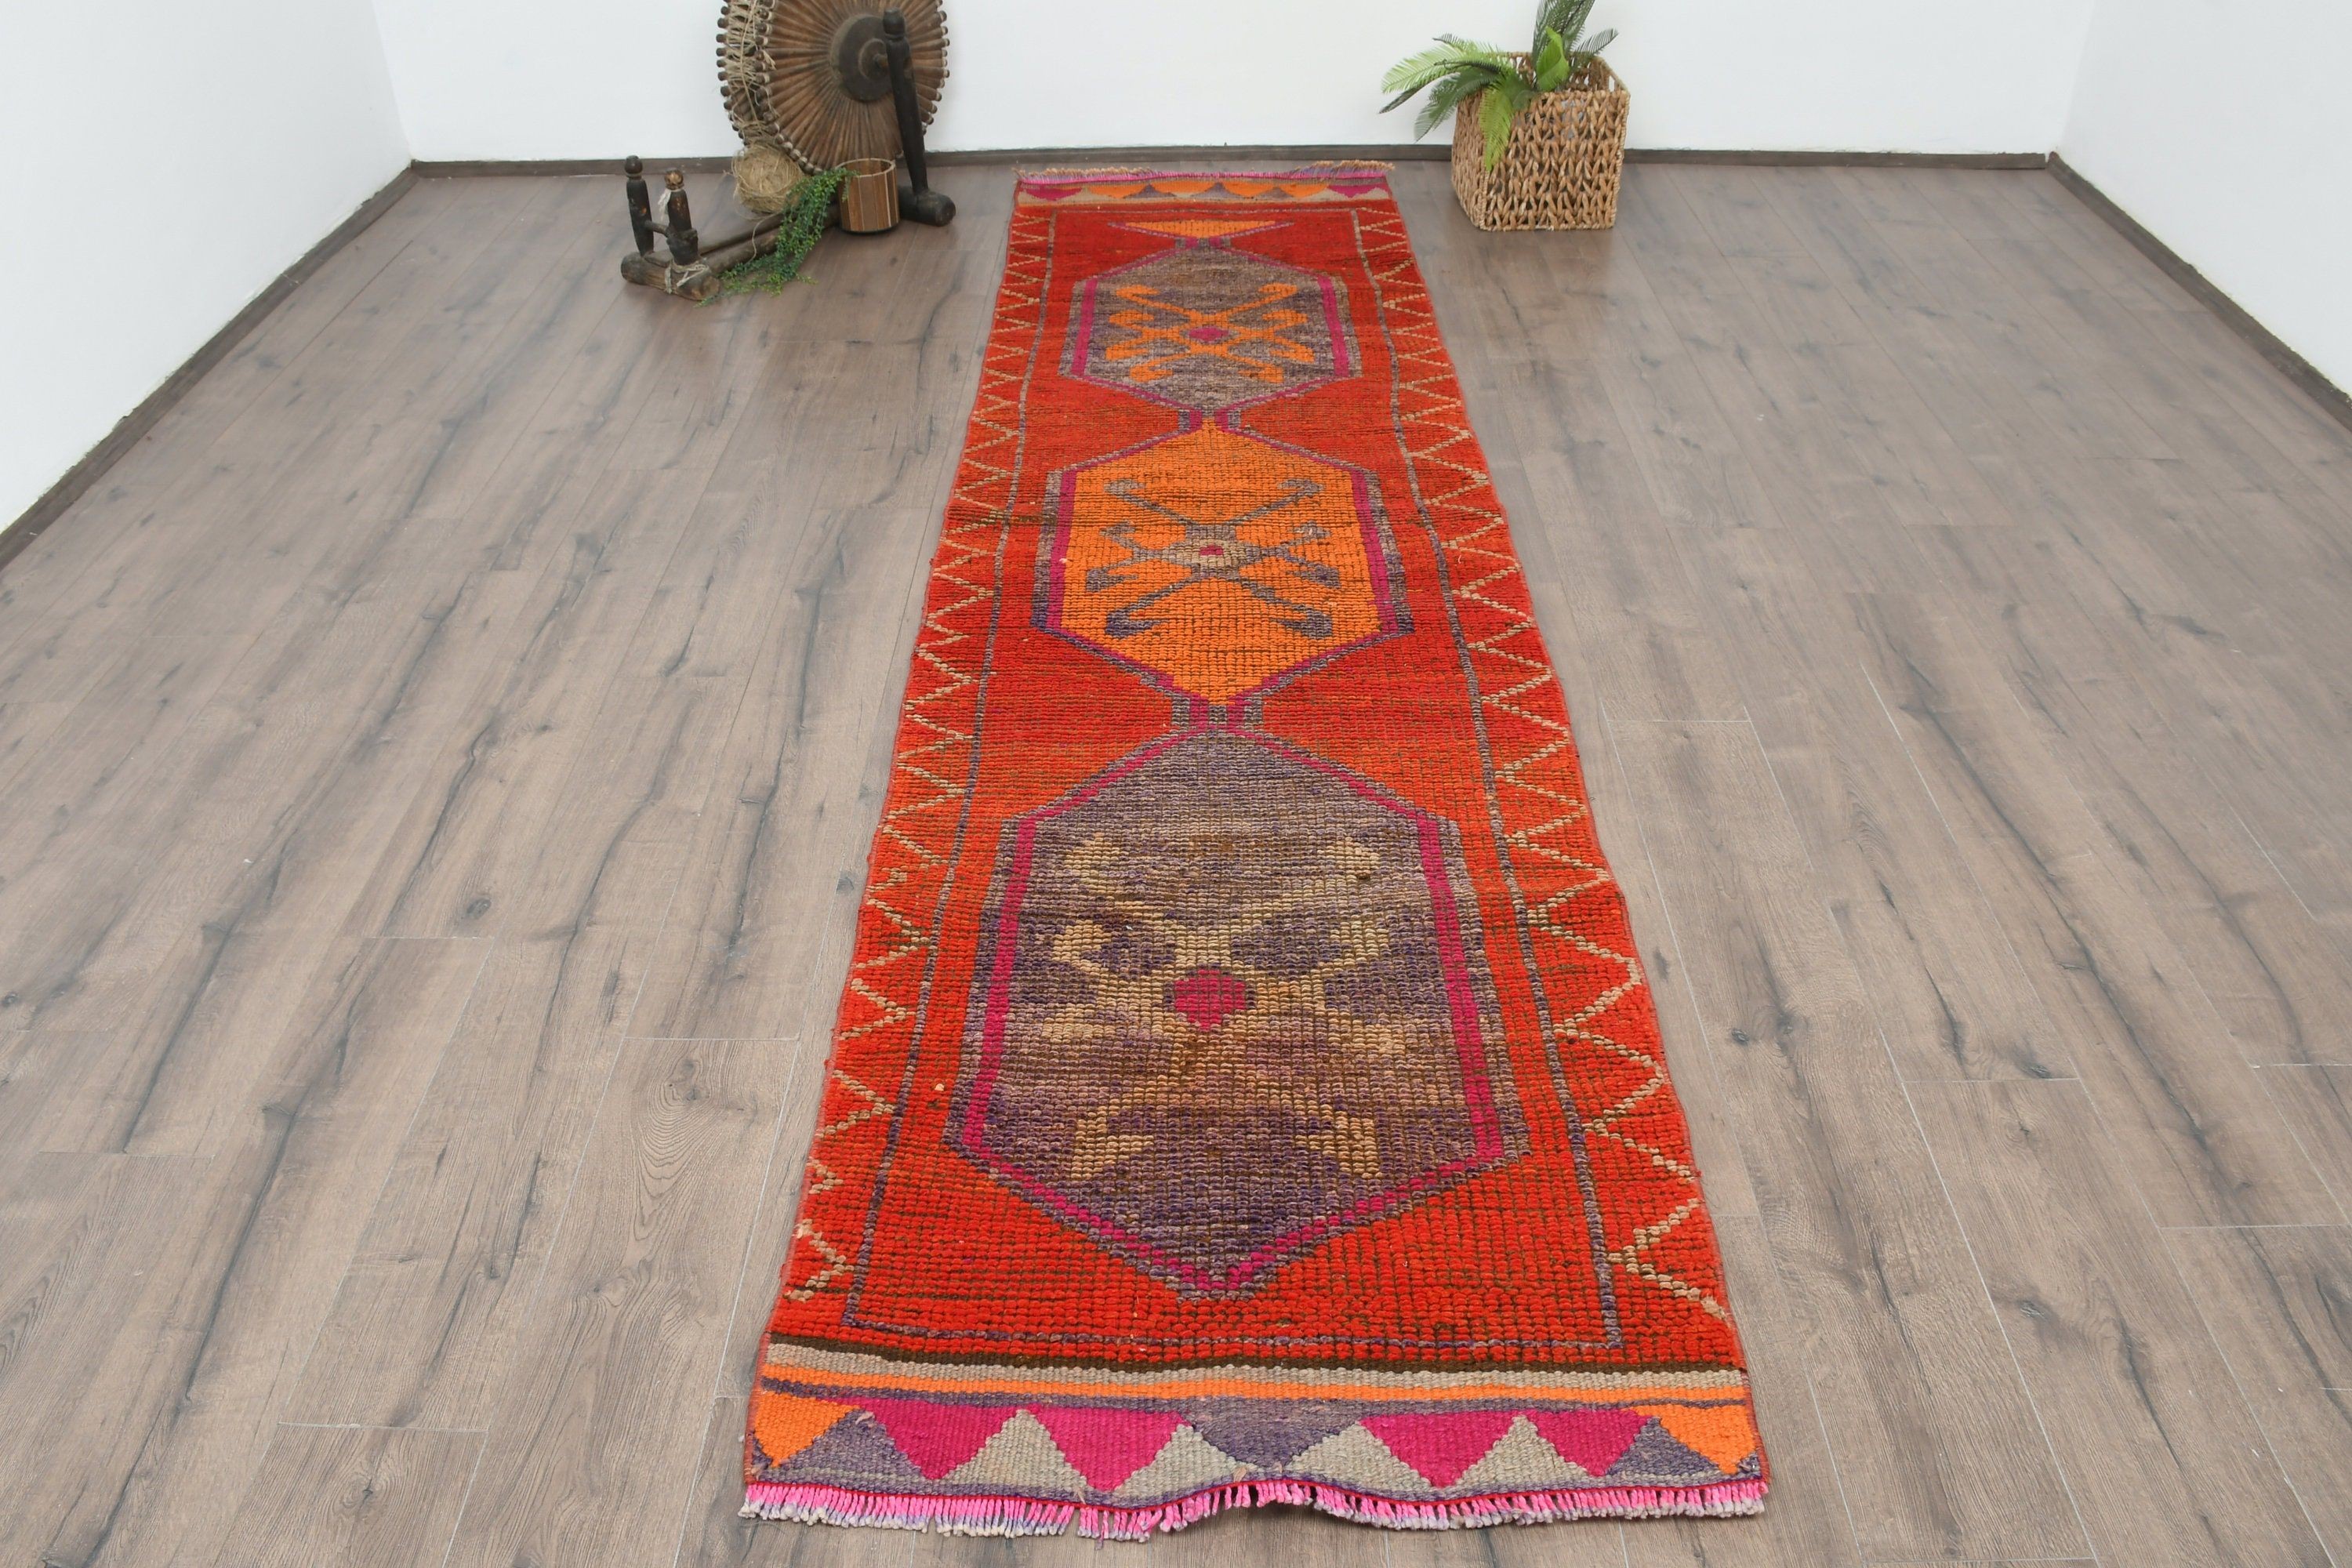 Floor Rug, 2.8x11.3 ft Runner Rug, Rugs for Kitchen, Wool Rugs, Turkish Rugs, Distressed Rug, Vintage Rugs, Corridor Rug, Red Oushak Rugs